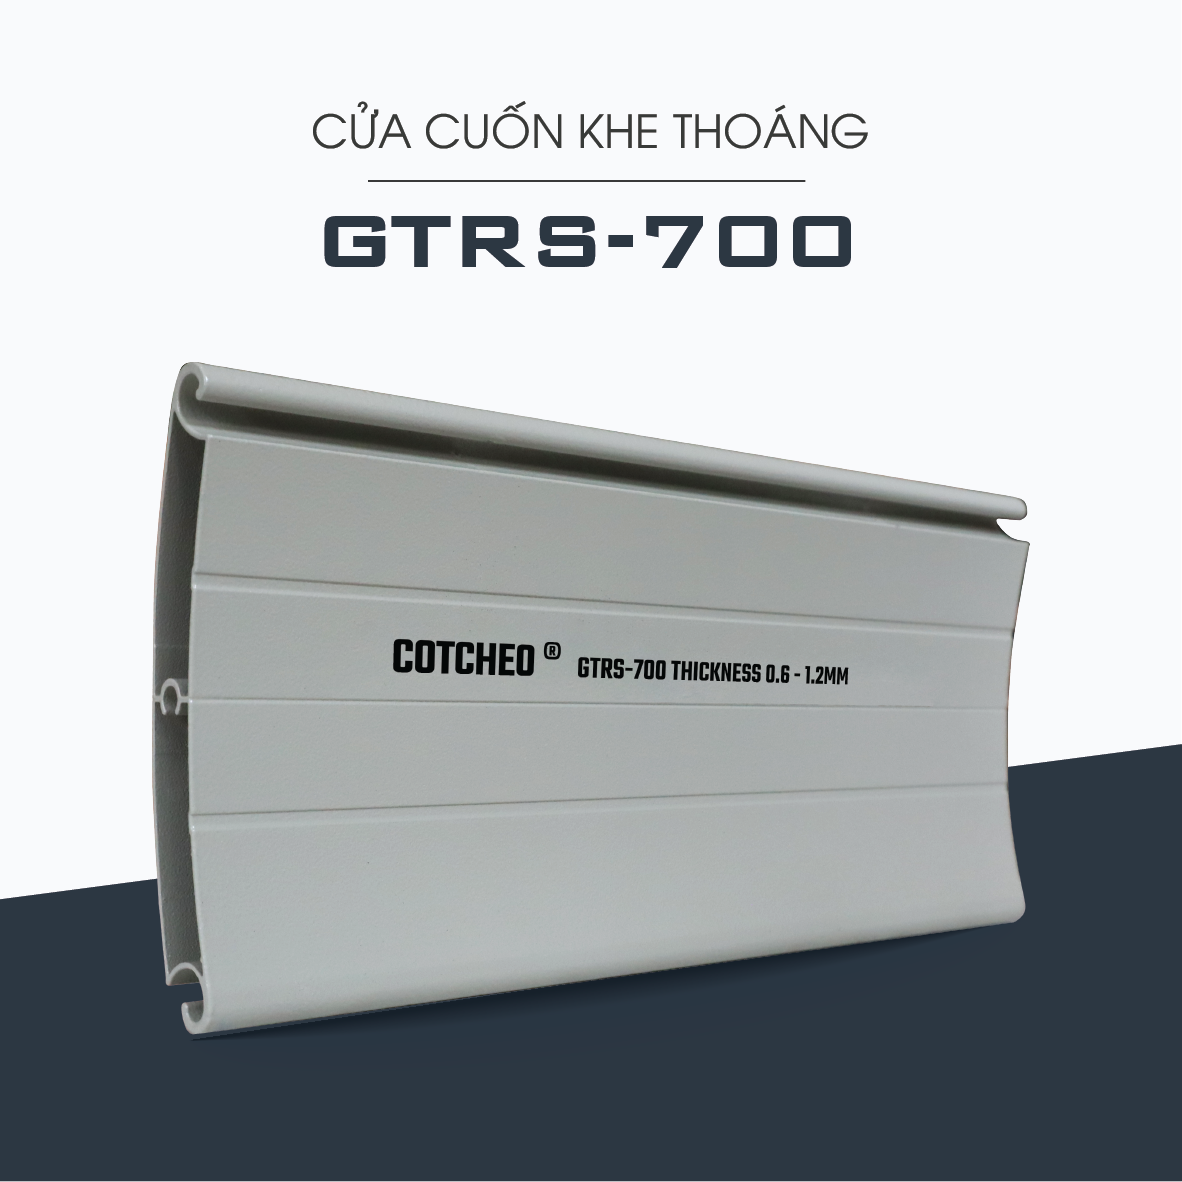 GTRS-700